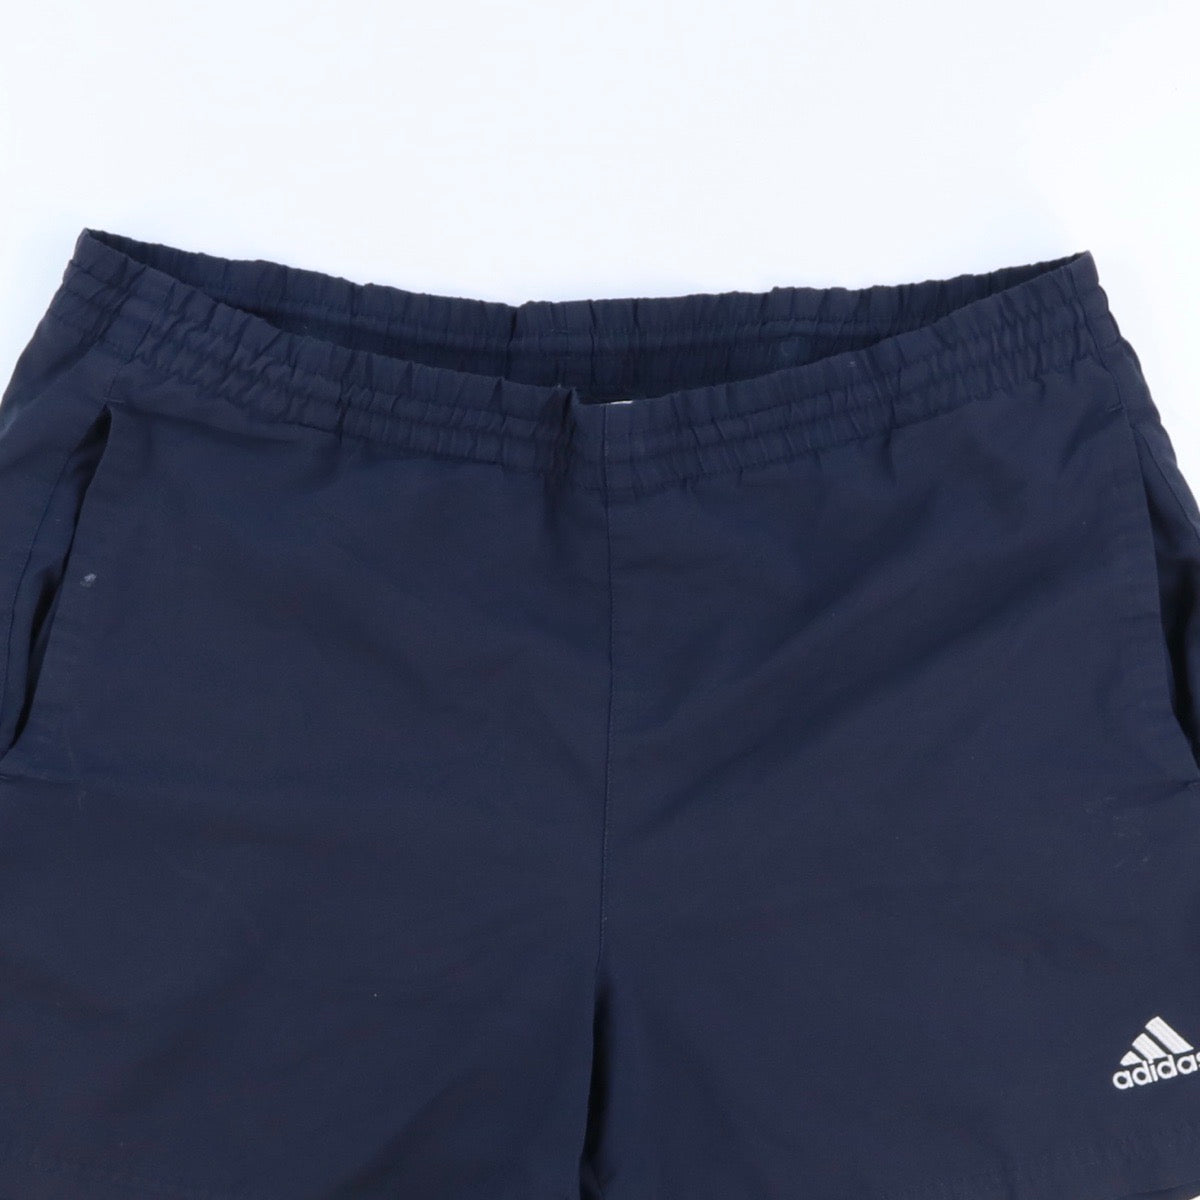 Adidas Shorts (34-36)